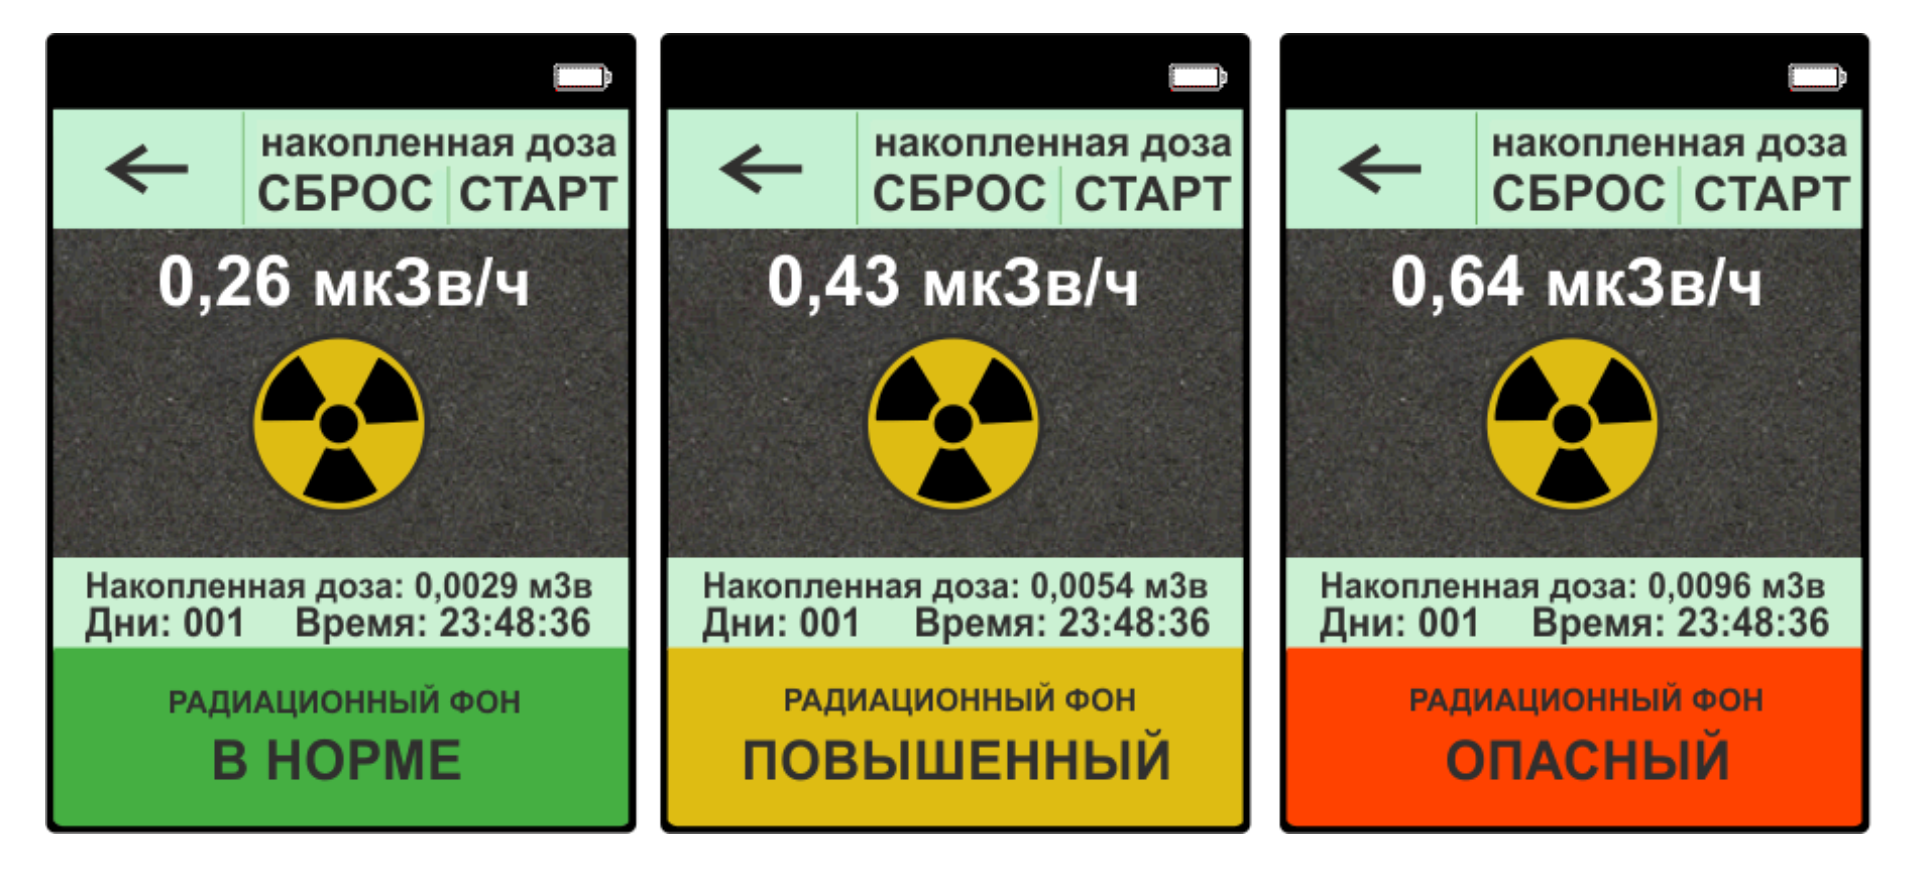 Радиация мкзв ч. Уровень радиационного фона норма. Нормы радиационного фона в микрозивертах. Дозиметр таблица допустимой радиации. Норма радиационного фона МКЗВ/Ч для человека.